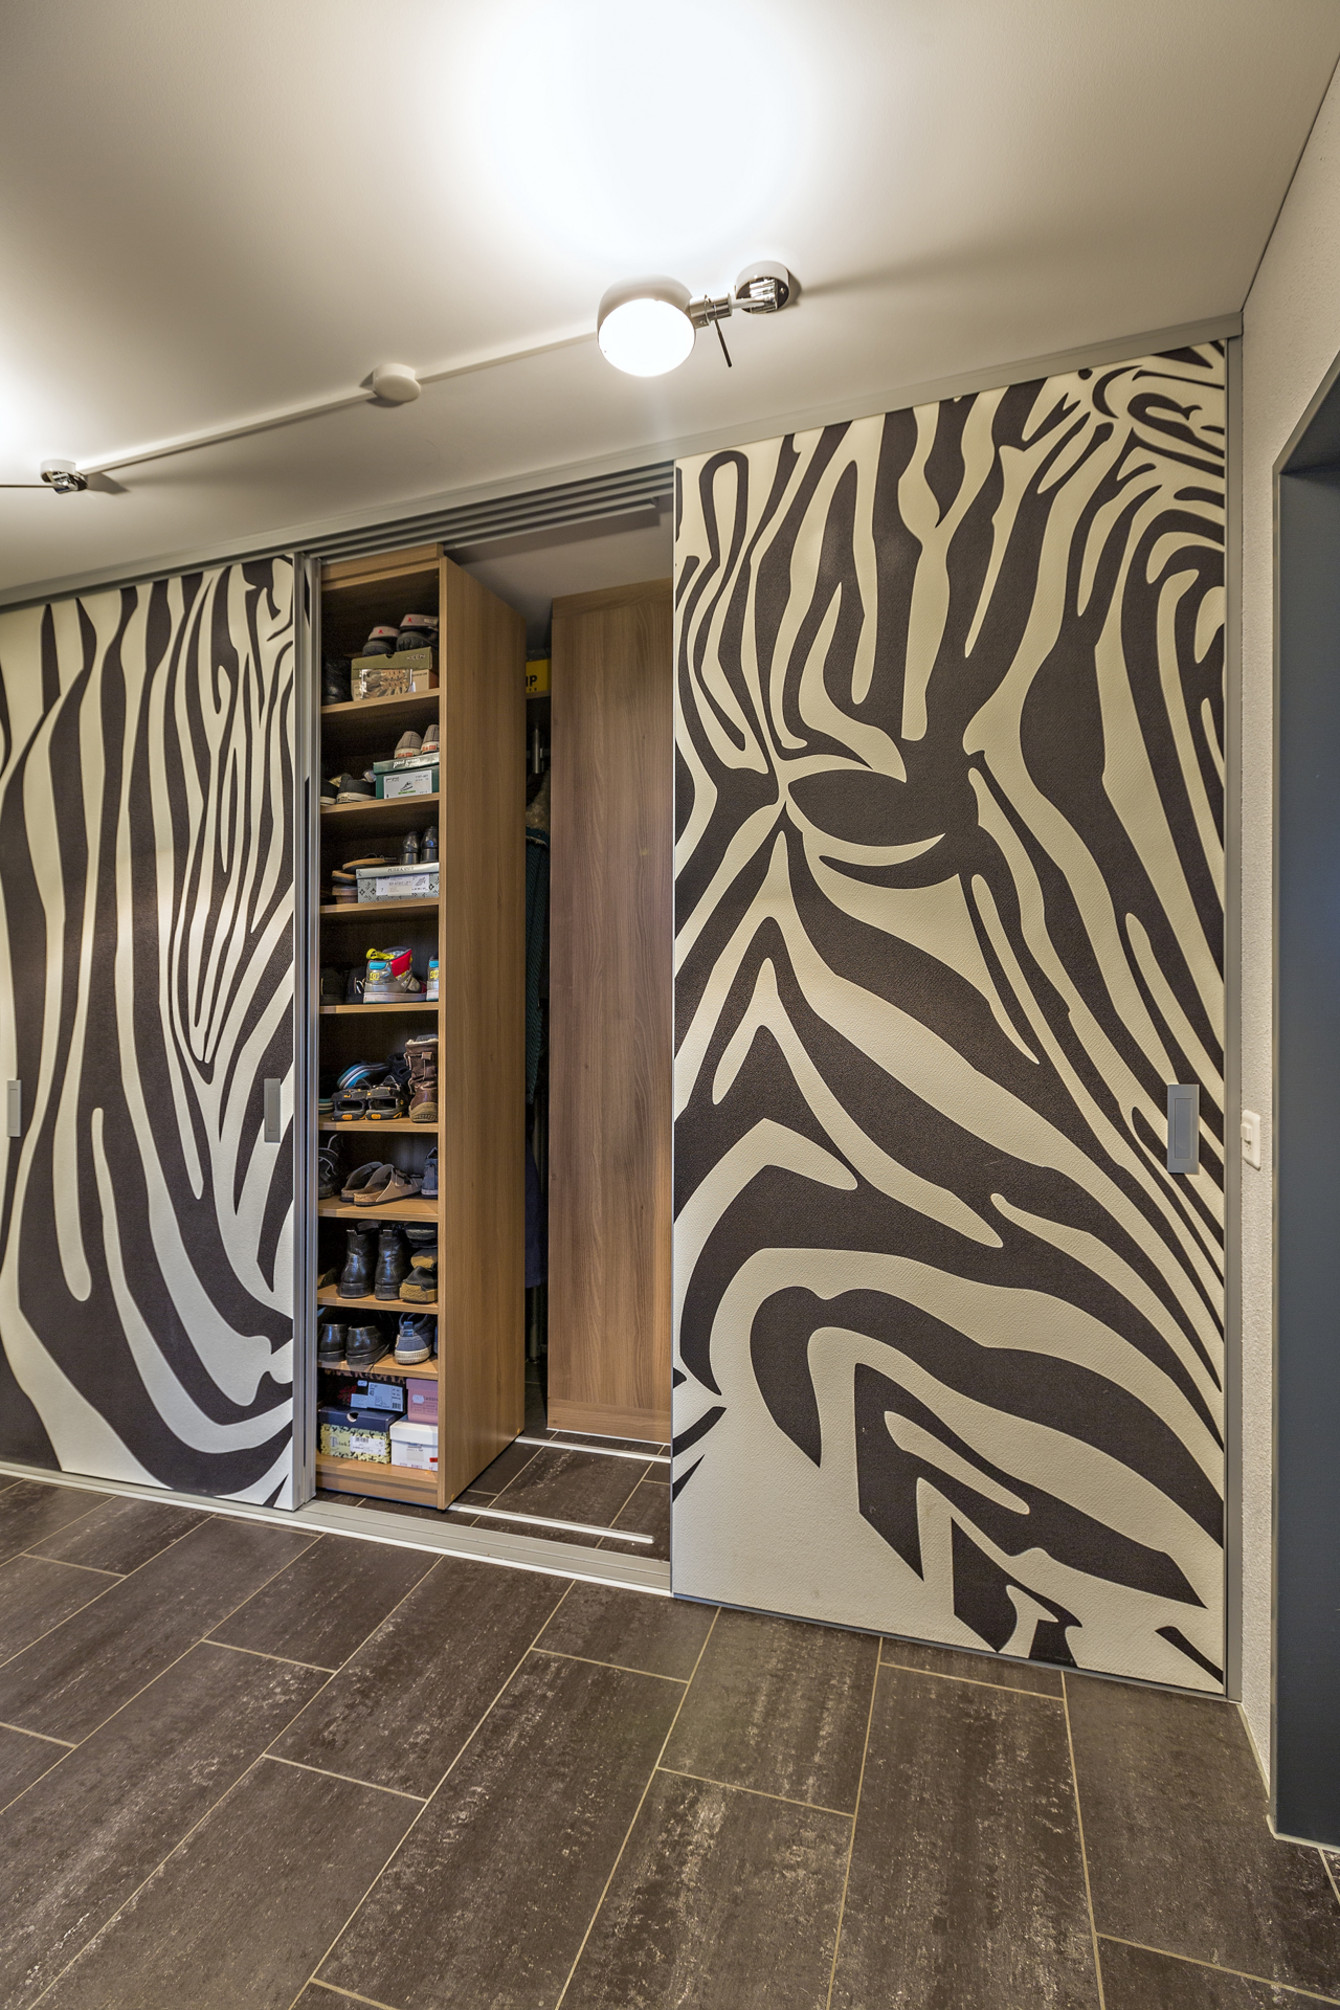 Garderobenschrank in doppelter Tiefe und Durchgang ins nächste Zimmer, geschlossen zeigt die Wand ein Zebra